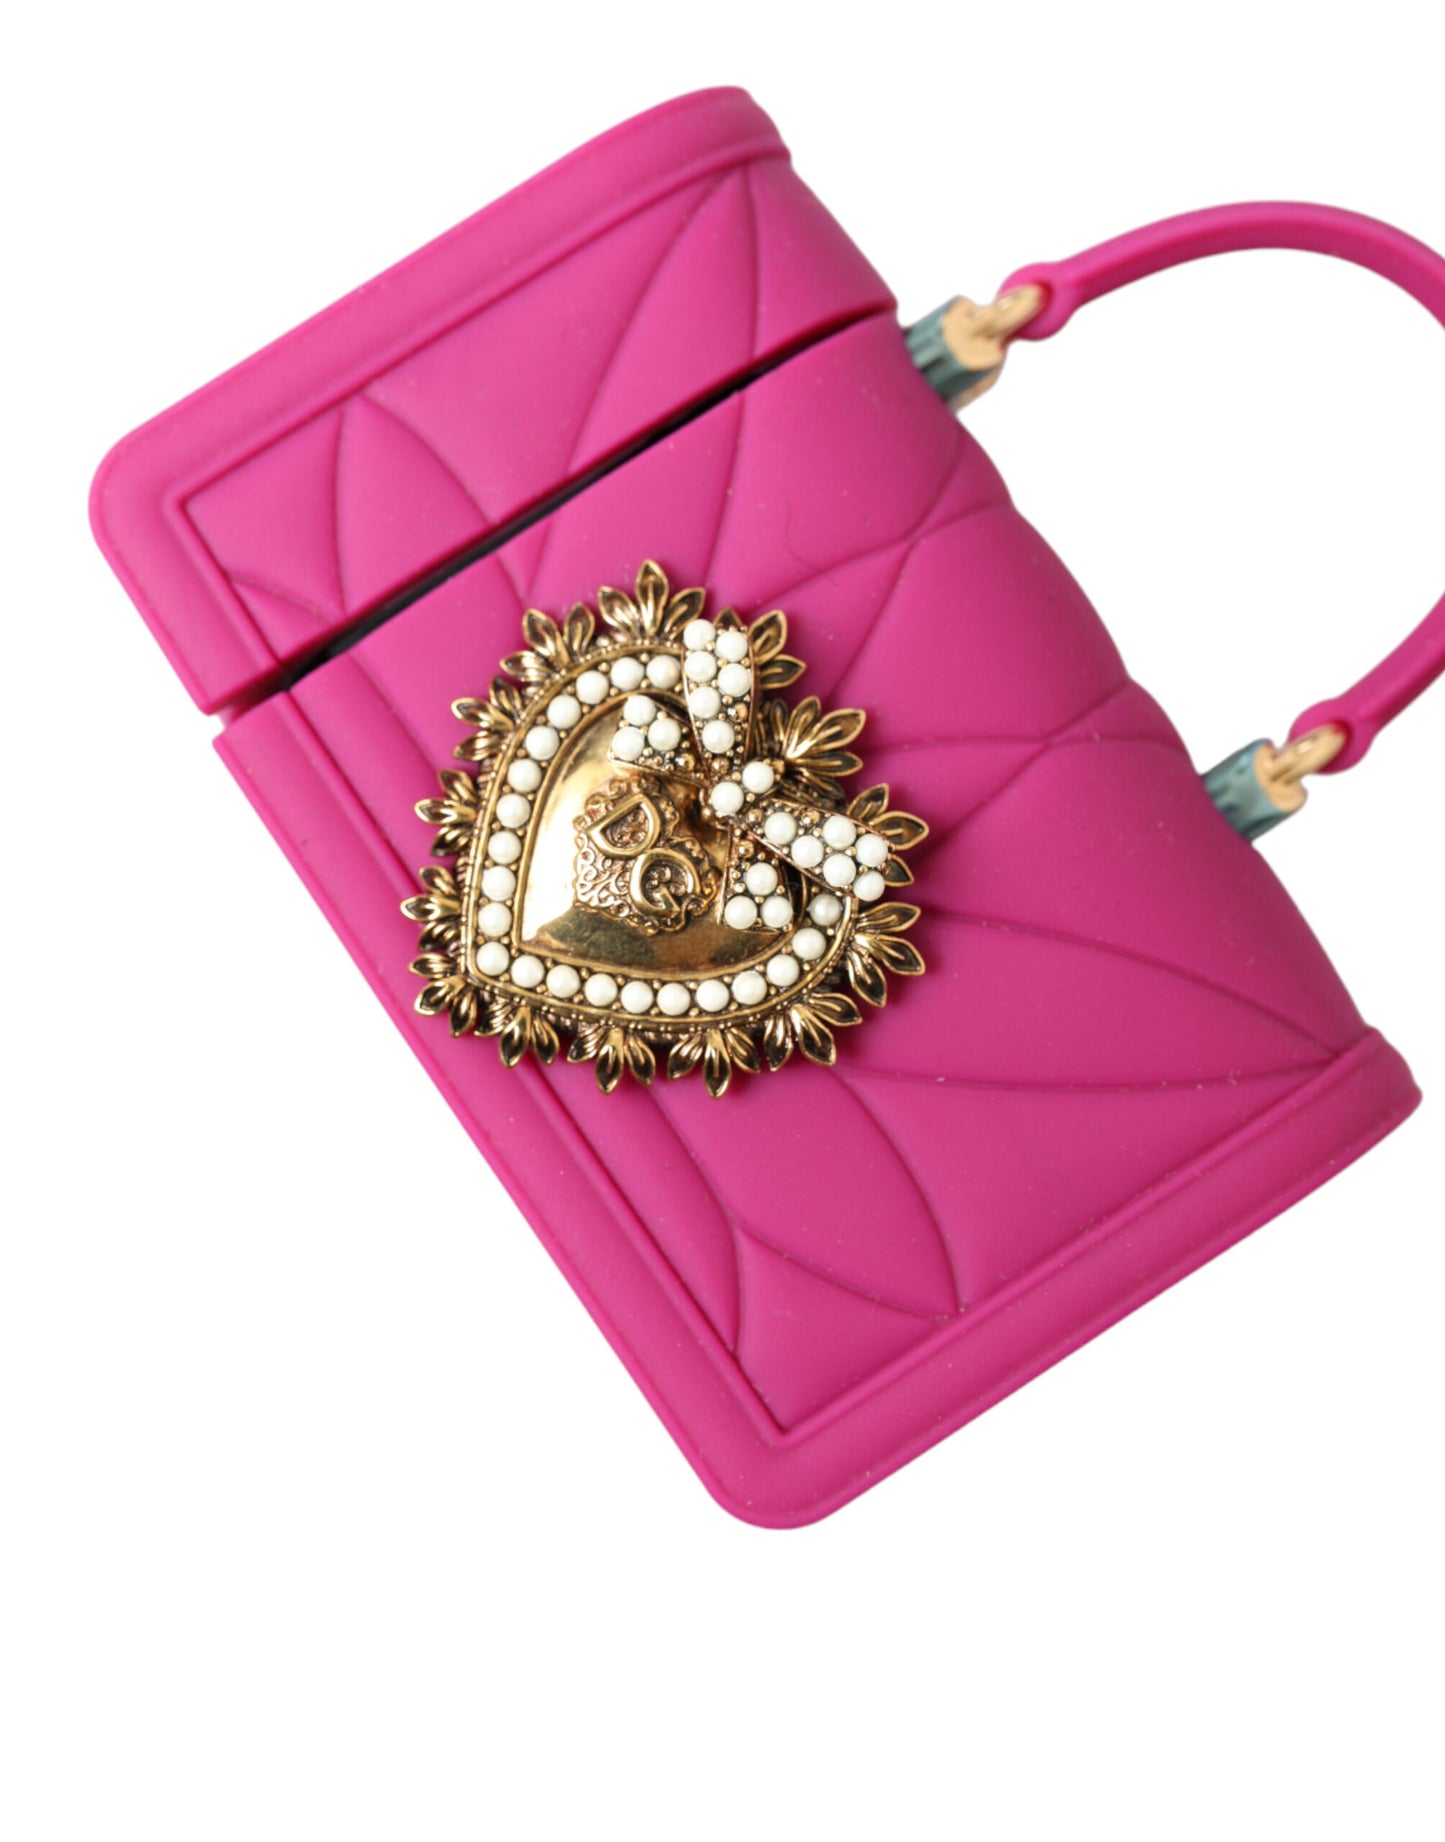 Dolce & Gabbana Pink Silicone Devotion Heart Bag Gold Chain Airpods Case - DEA STILOSA MILANO